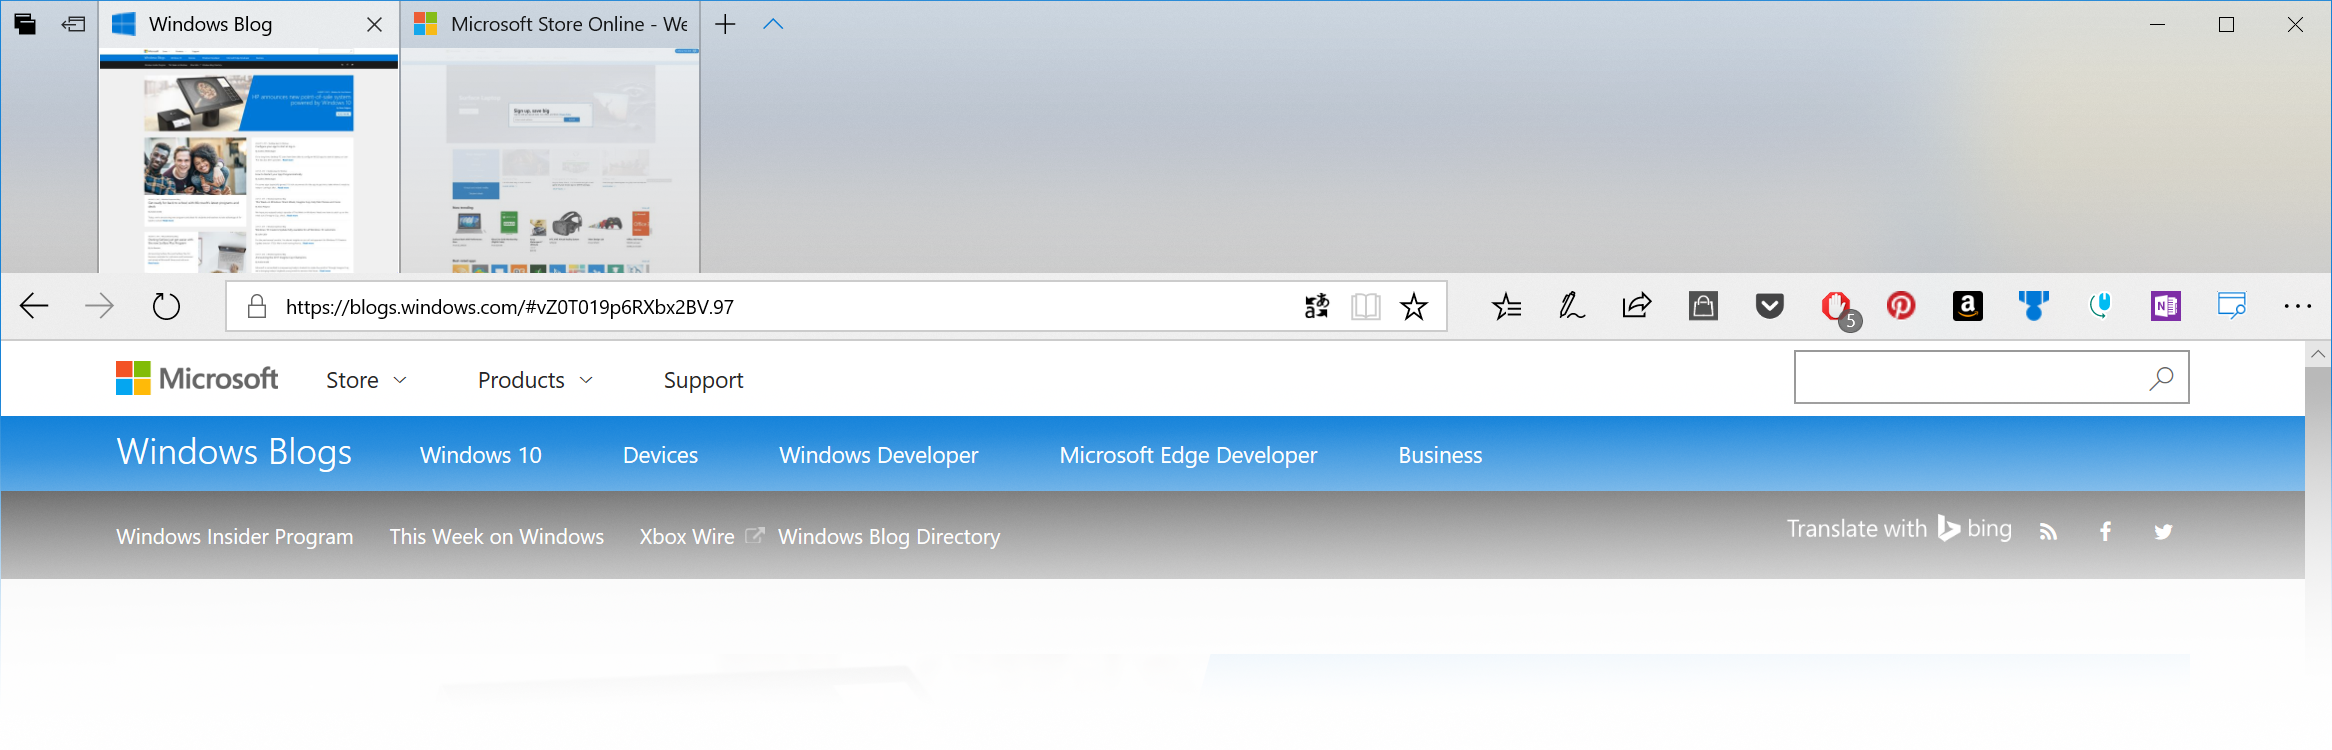 windows 10 enterprise 1803 download iso 64 bit deutsch